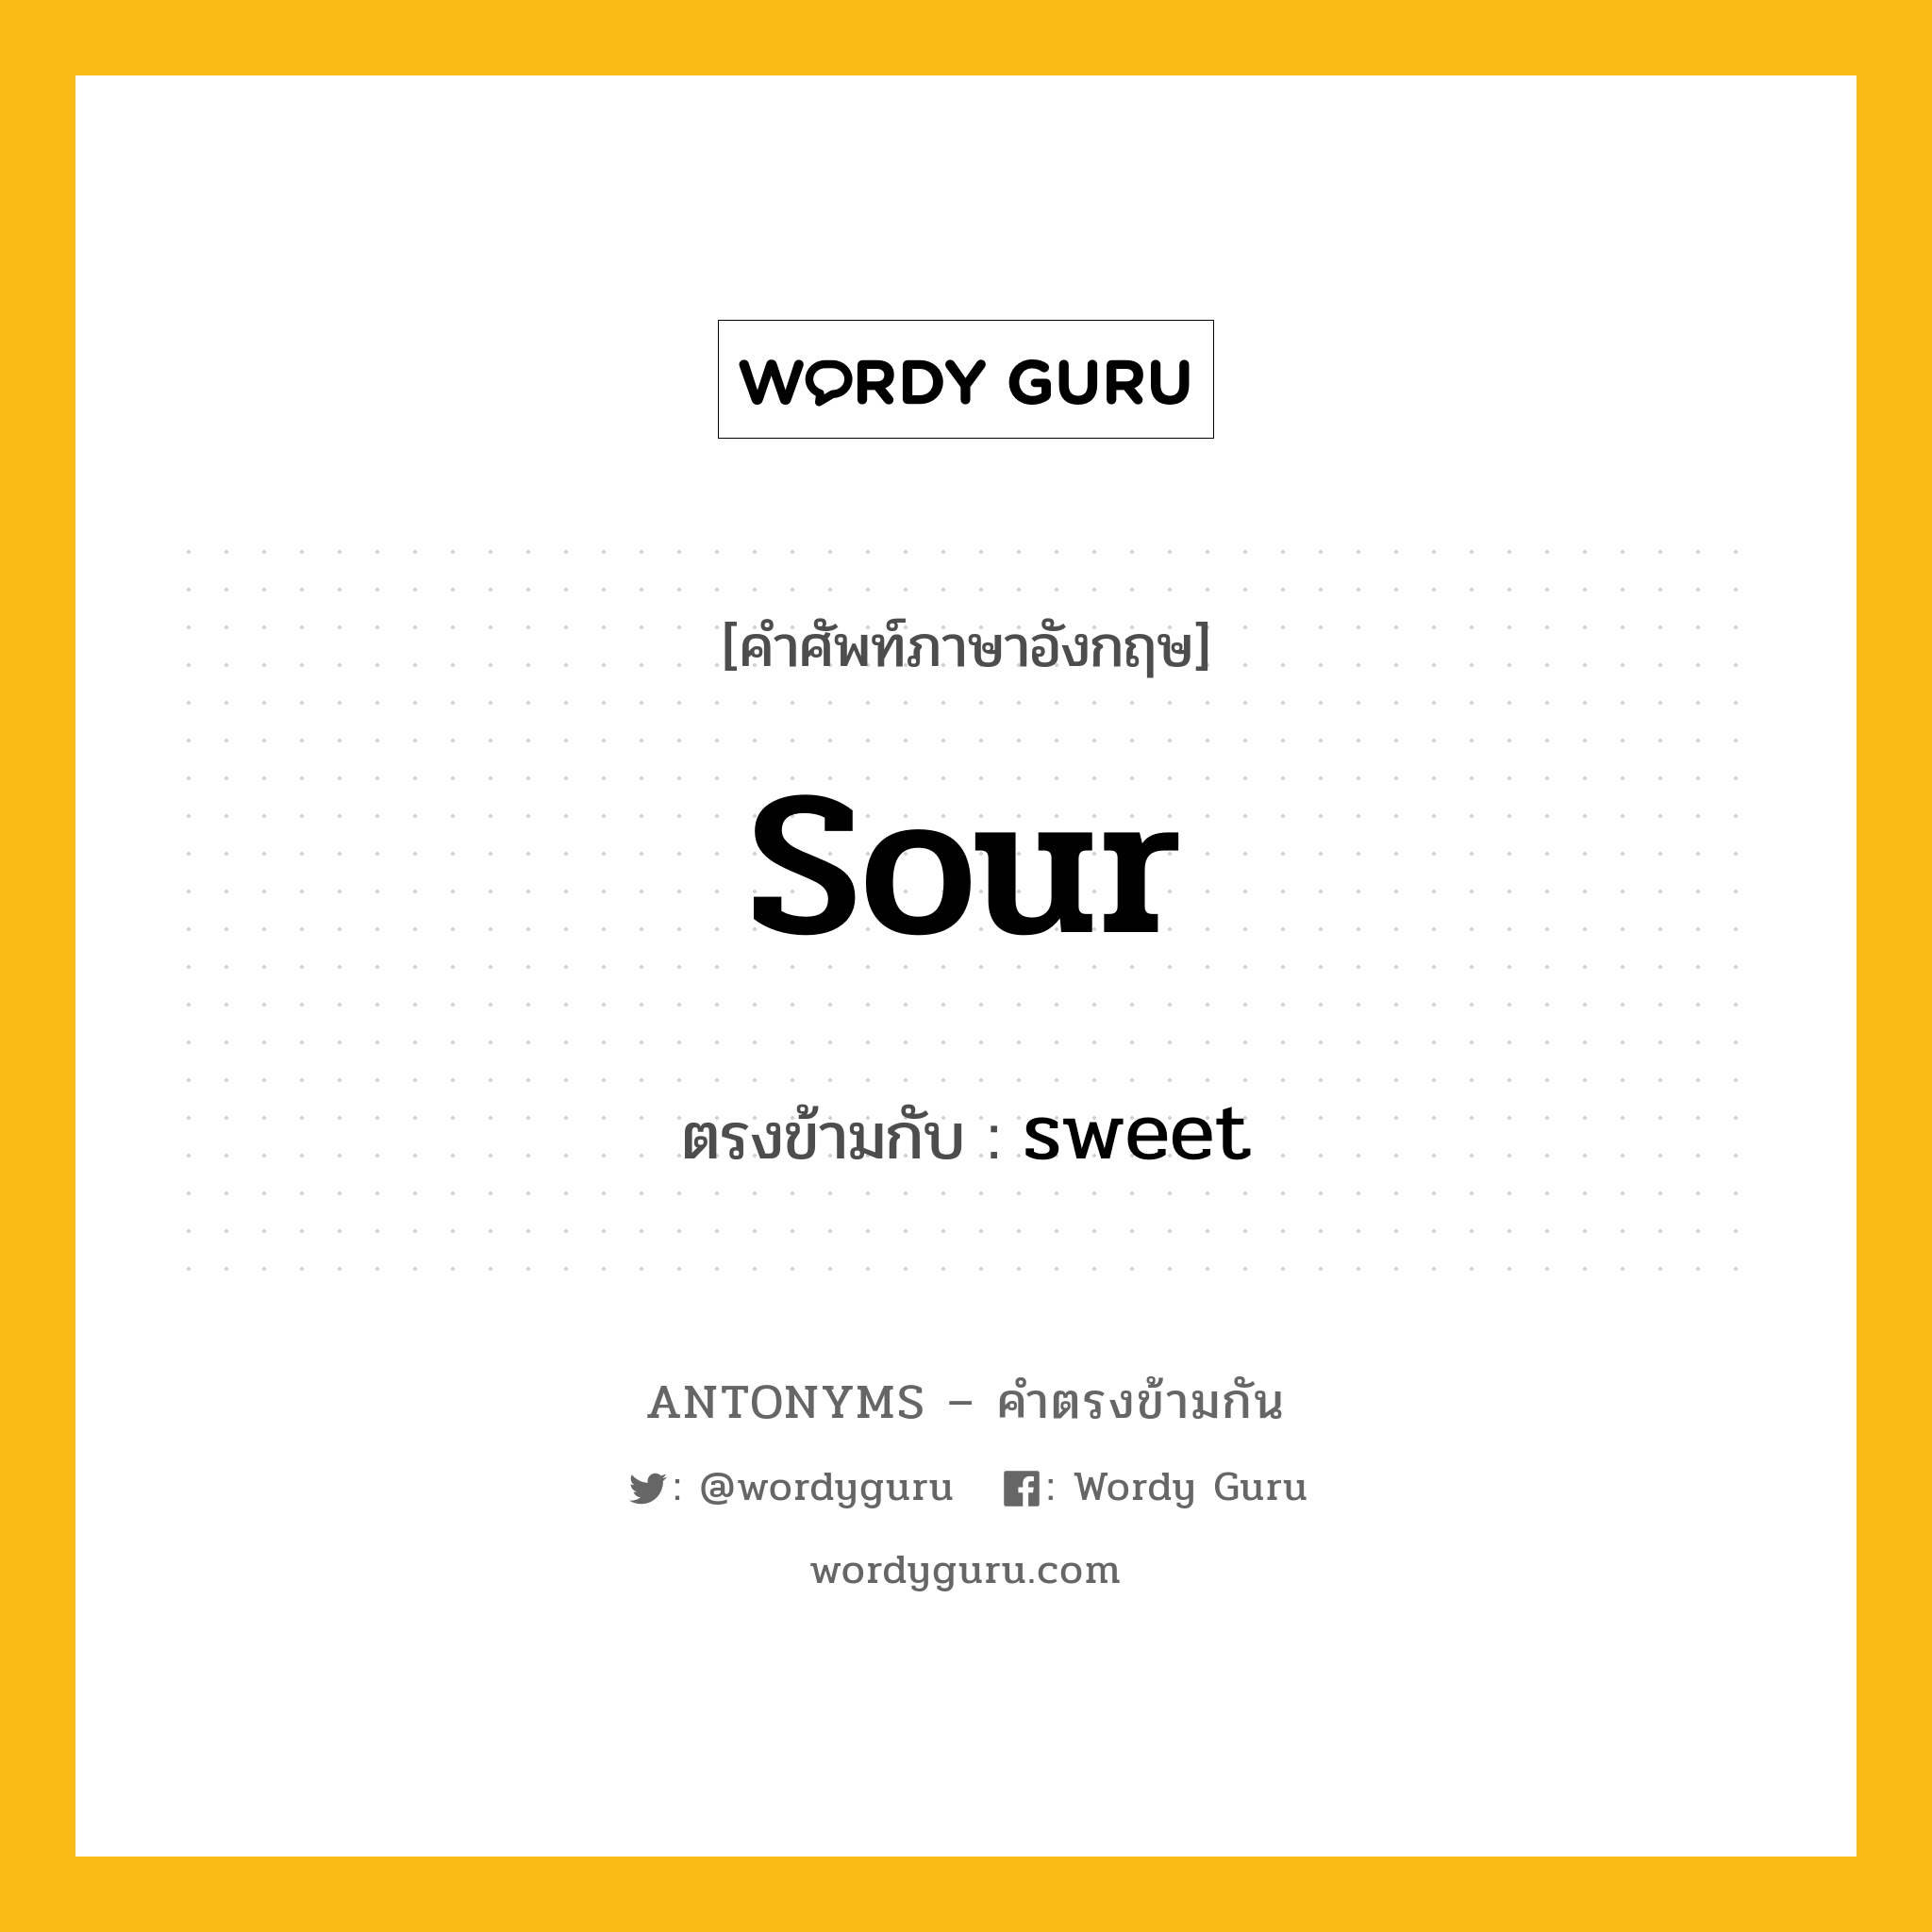 sour เป็นคำตรงข้ามกับคำไหนบ้าง?, คำศัพท์ภาษาอังกฤษ sour ตรงข้ามกับ sweet หมวด sweet